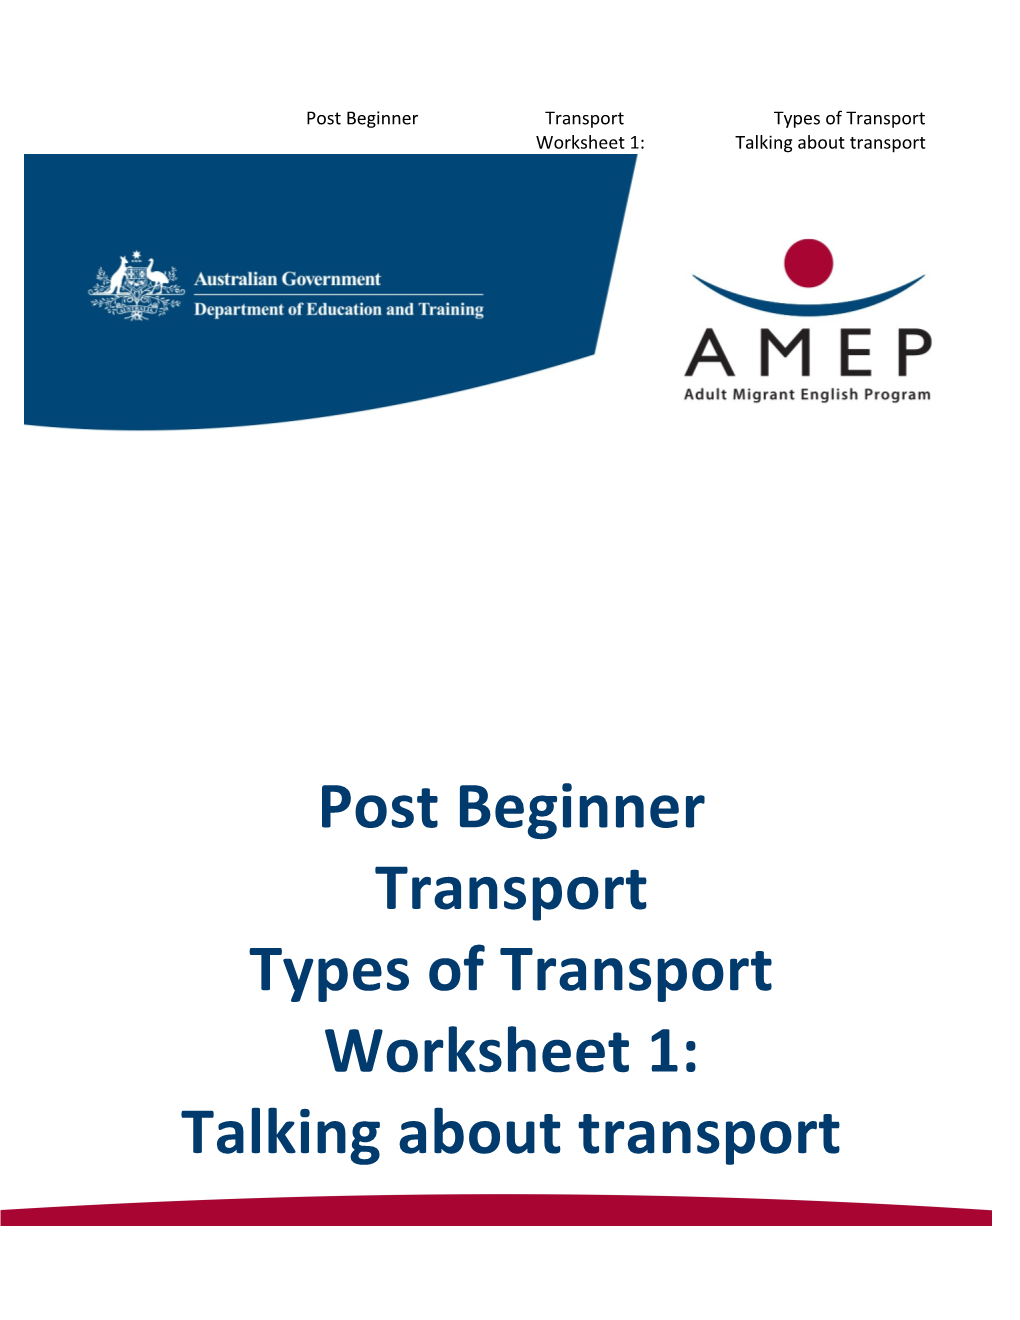 Post Beginner Transport Types of Transport Worksheet 1: Talking About Transport